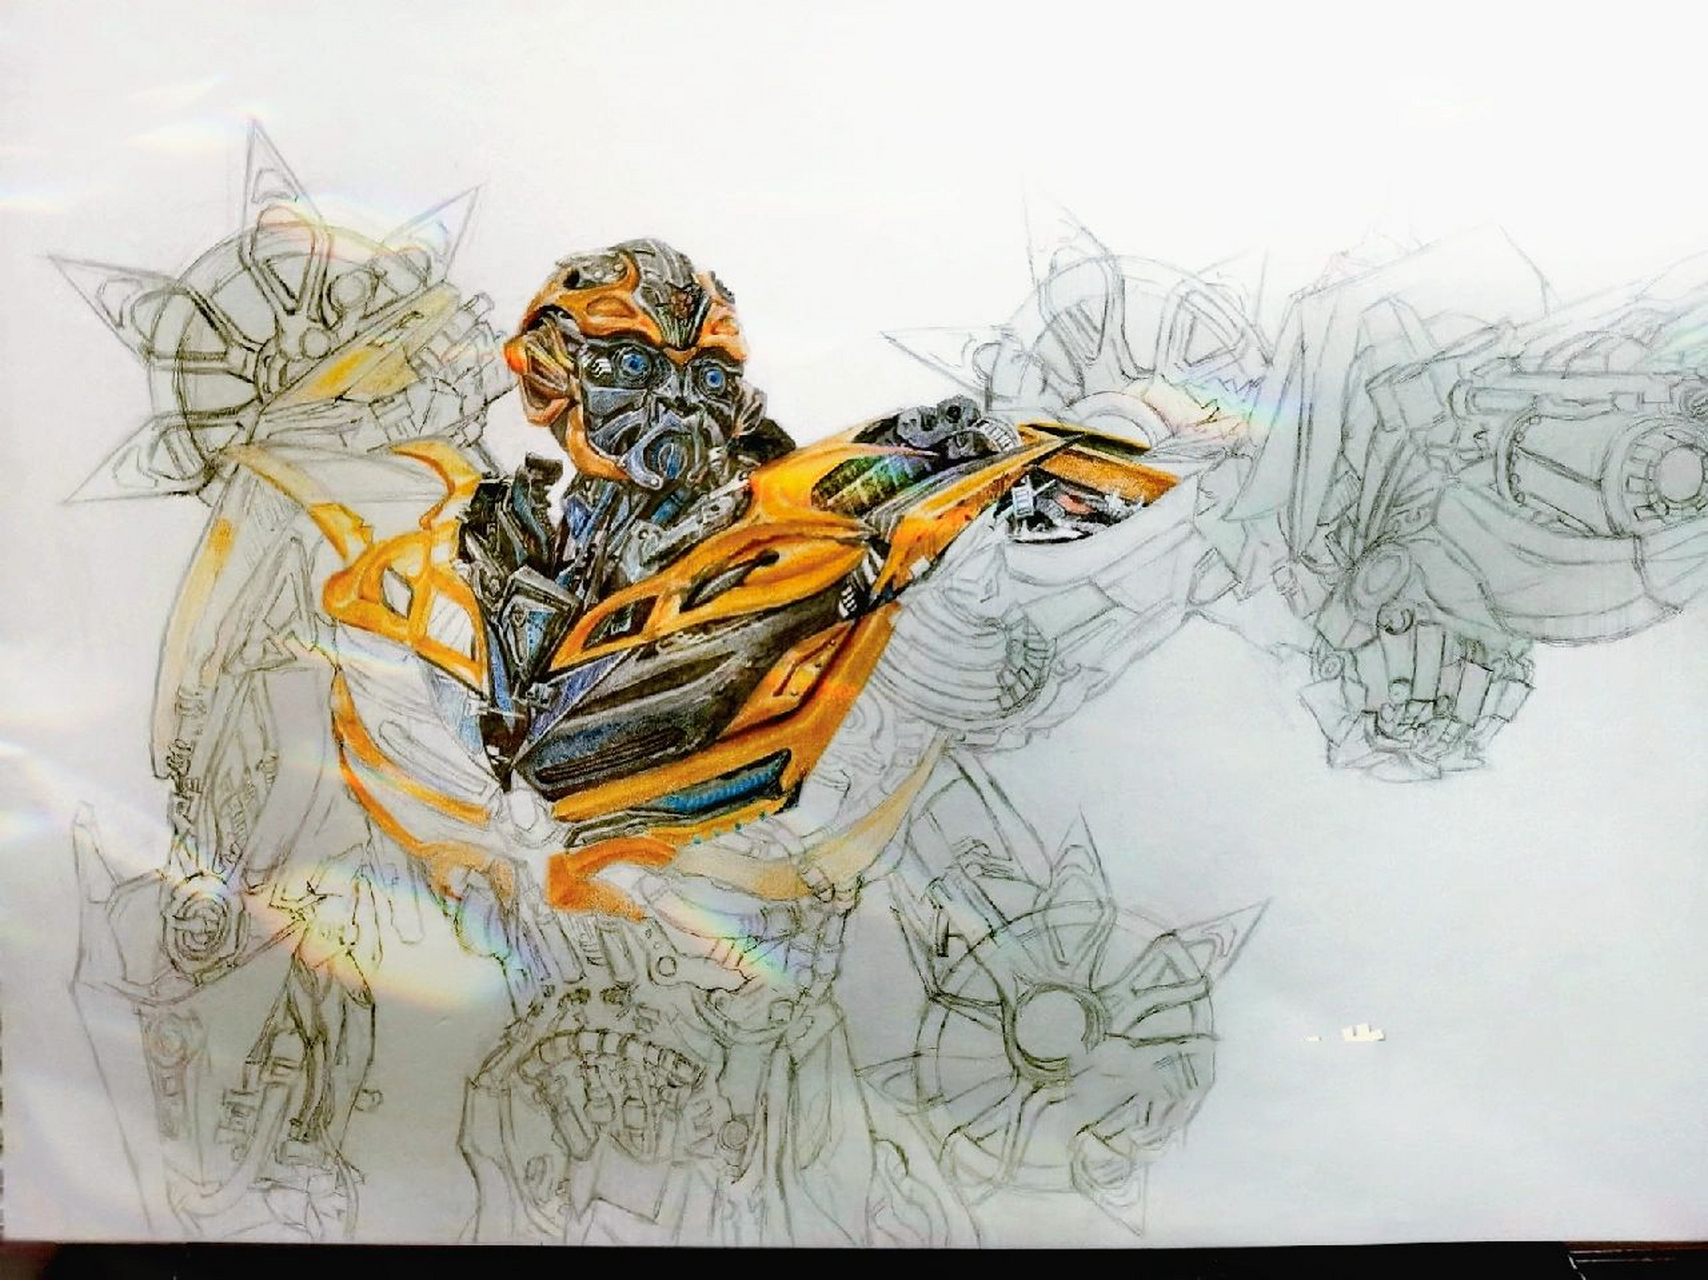 (彩铅绘画) 大黄蜂是变形金刚中我最喜欢的机器人之一,不仅仅是因为他